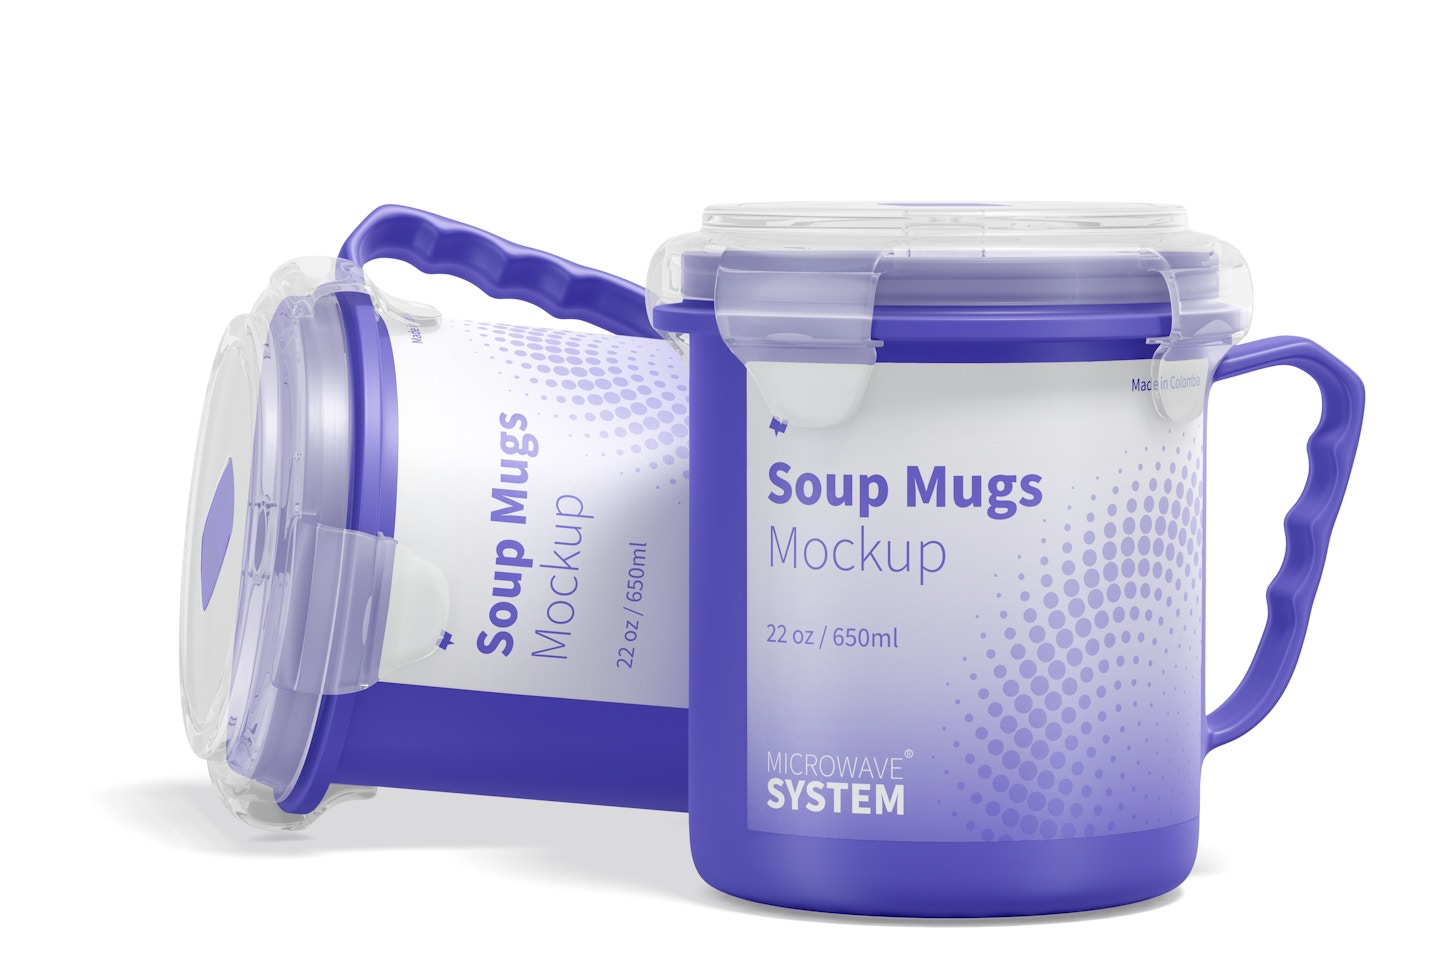 22 oz Soup Mugs Mockup